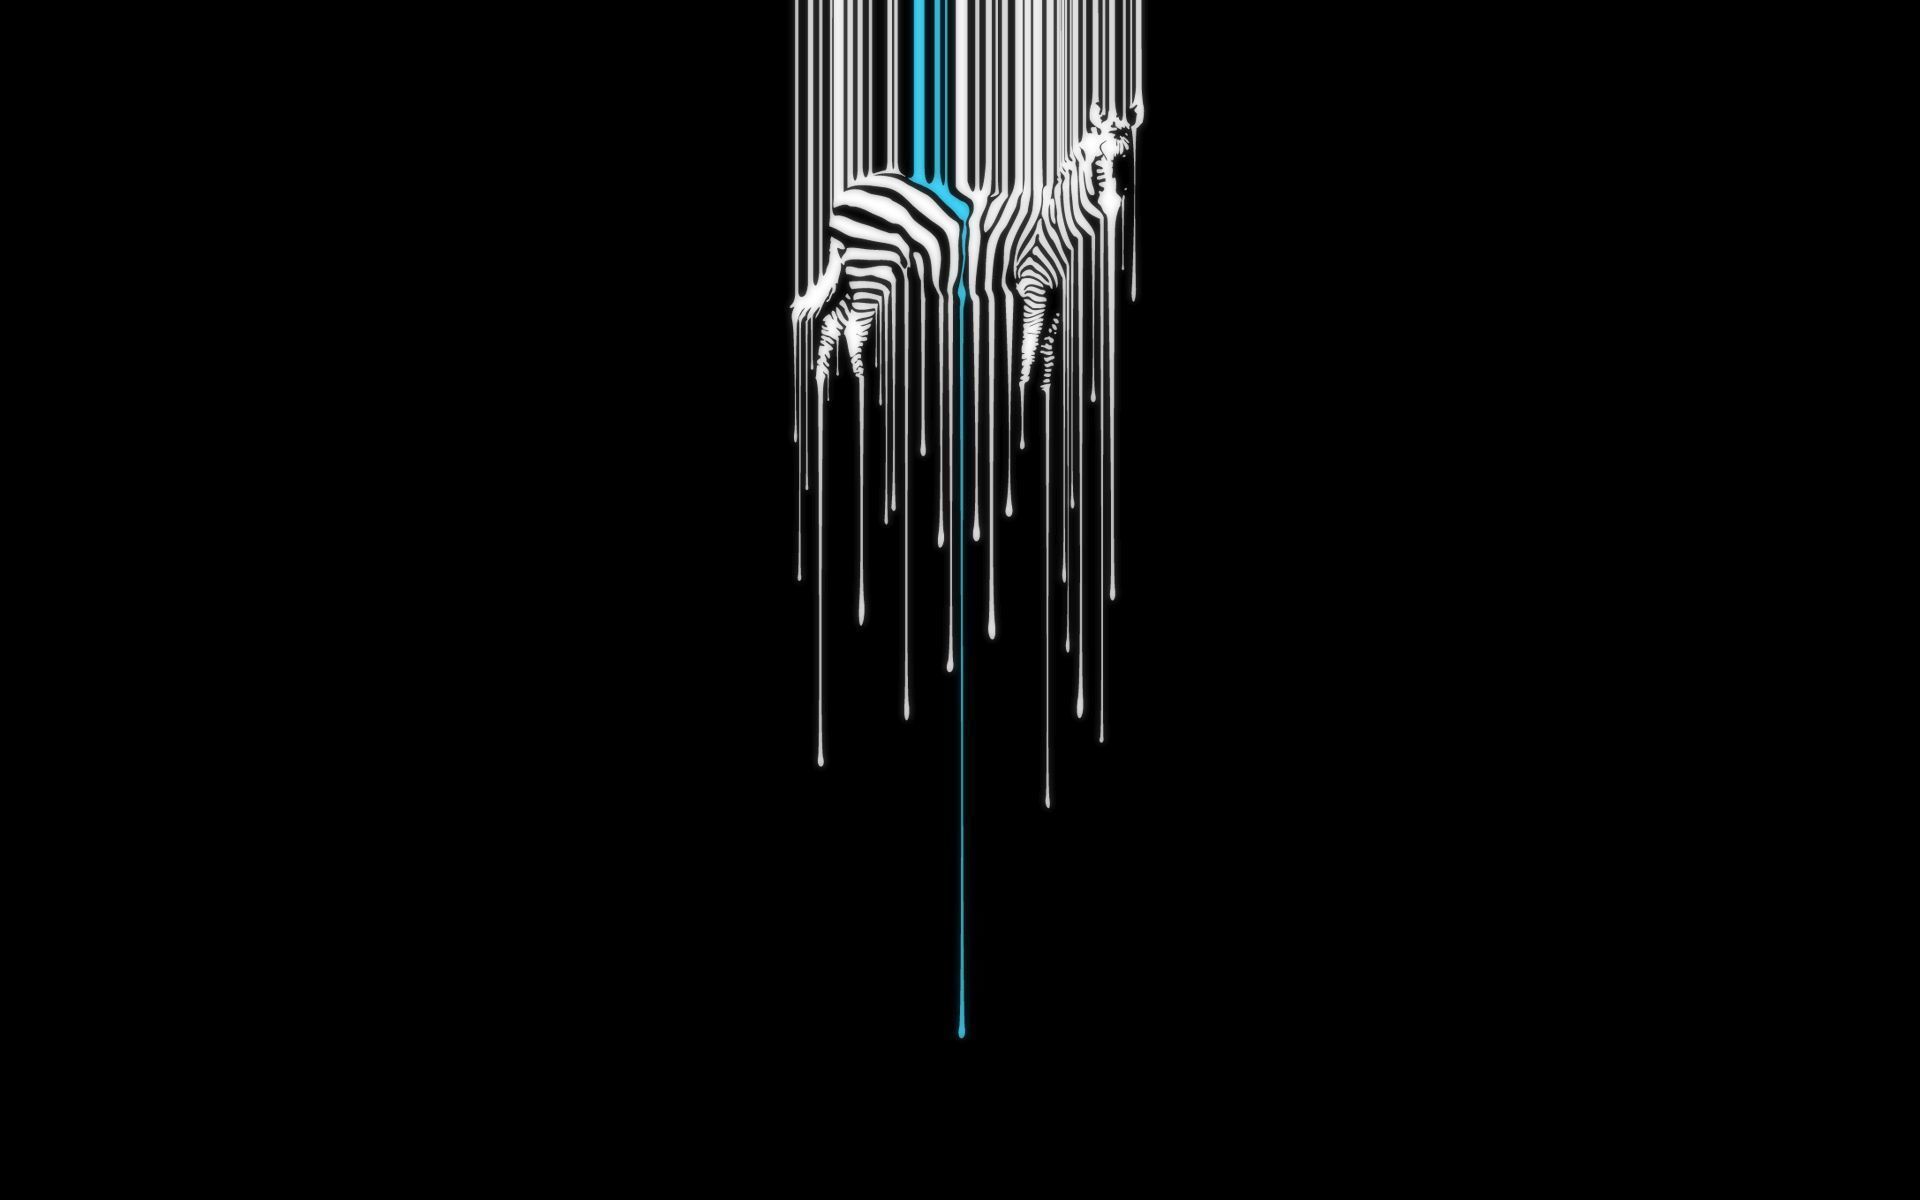 dripping-on-a-zebra-1920x1200-vector-desktop-wallpaper-29570.jpg